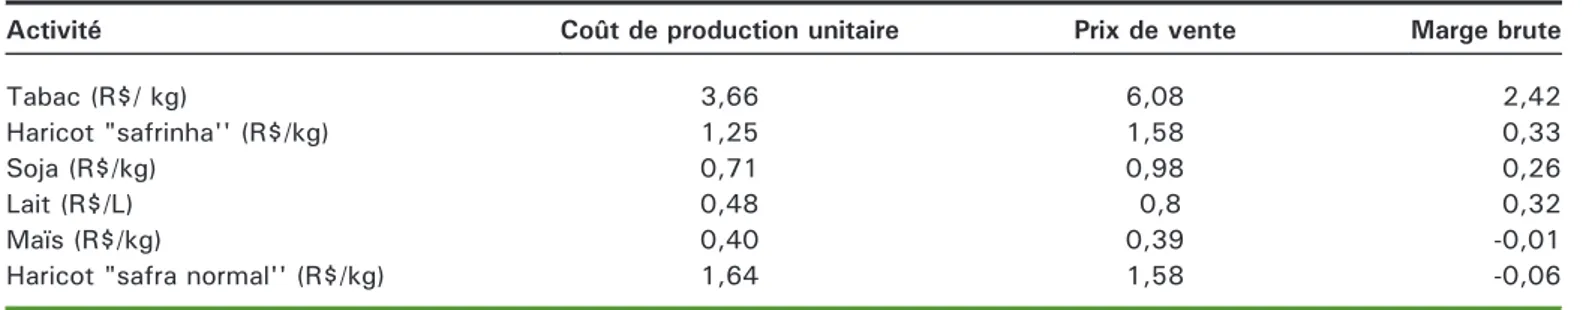 Tableau 2. Coûts de production, prix de vente et marge brute des principales cultures de la région d'Irati, Brésil, année 2012.